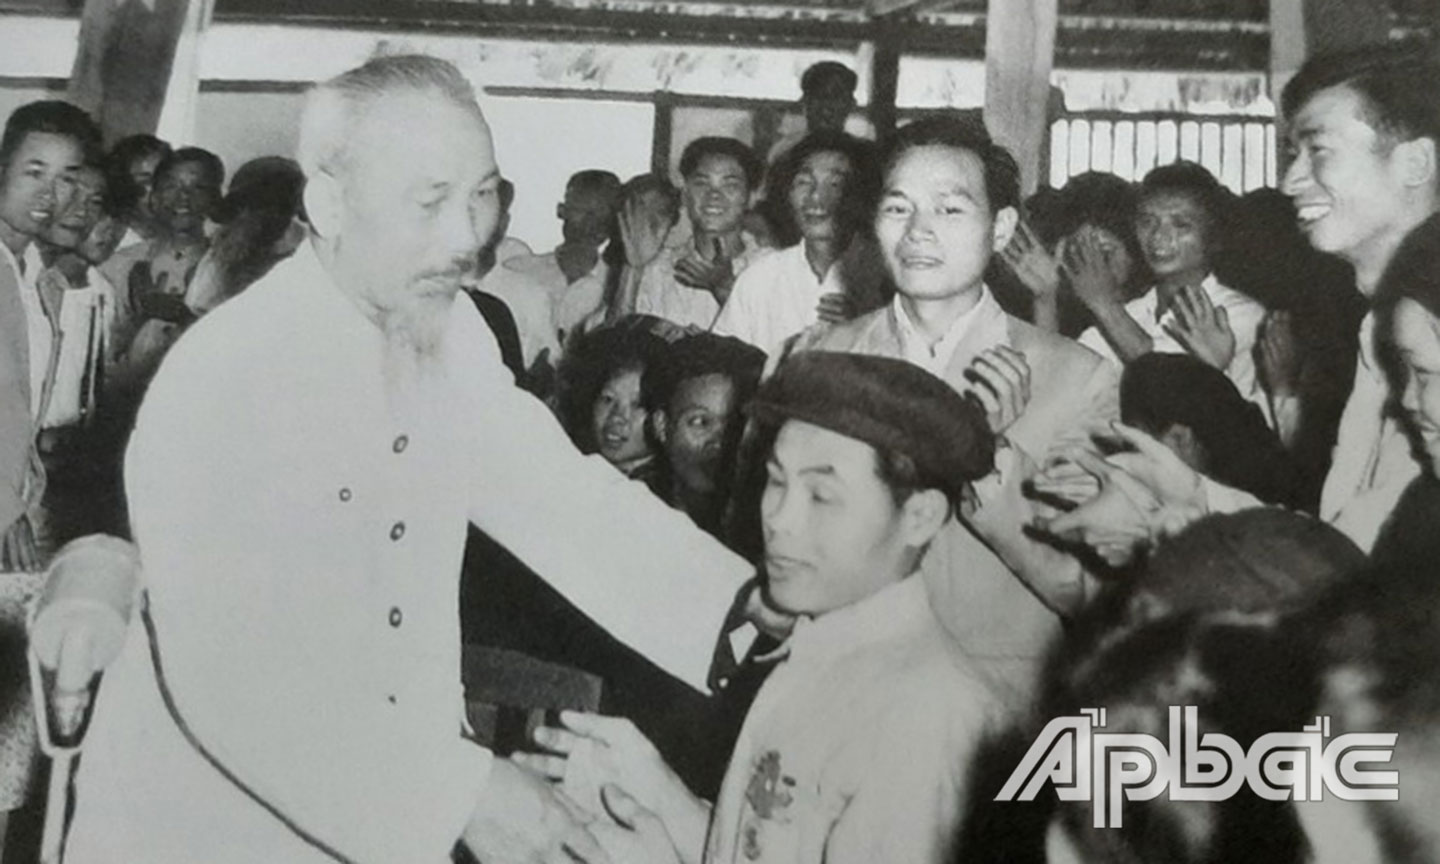 Tại Hội nghị Thanh niên xã hội chủ nghĩa khu Việt Bắc, Bác Hồ thăm hỏi chiến sĩ thi đua Phạm Trung Pồn bị mù cả hai mắt, nhưng có nhiều sáng kiến cải tiến nông cụ năm 1960.                       Ảnh: tư liệu